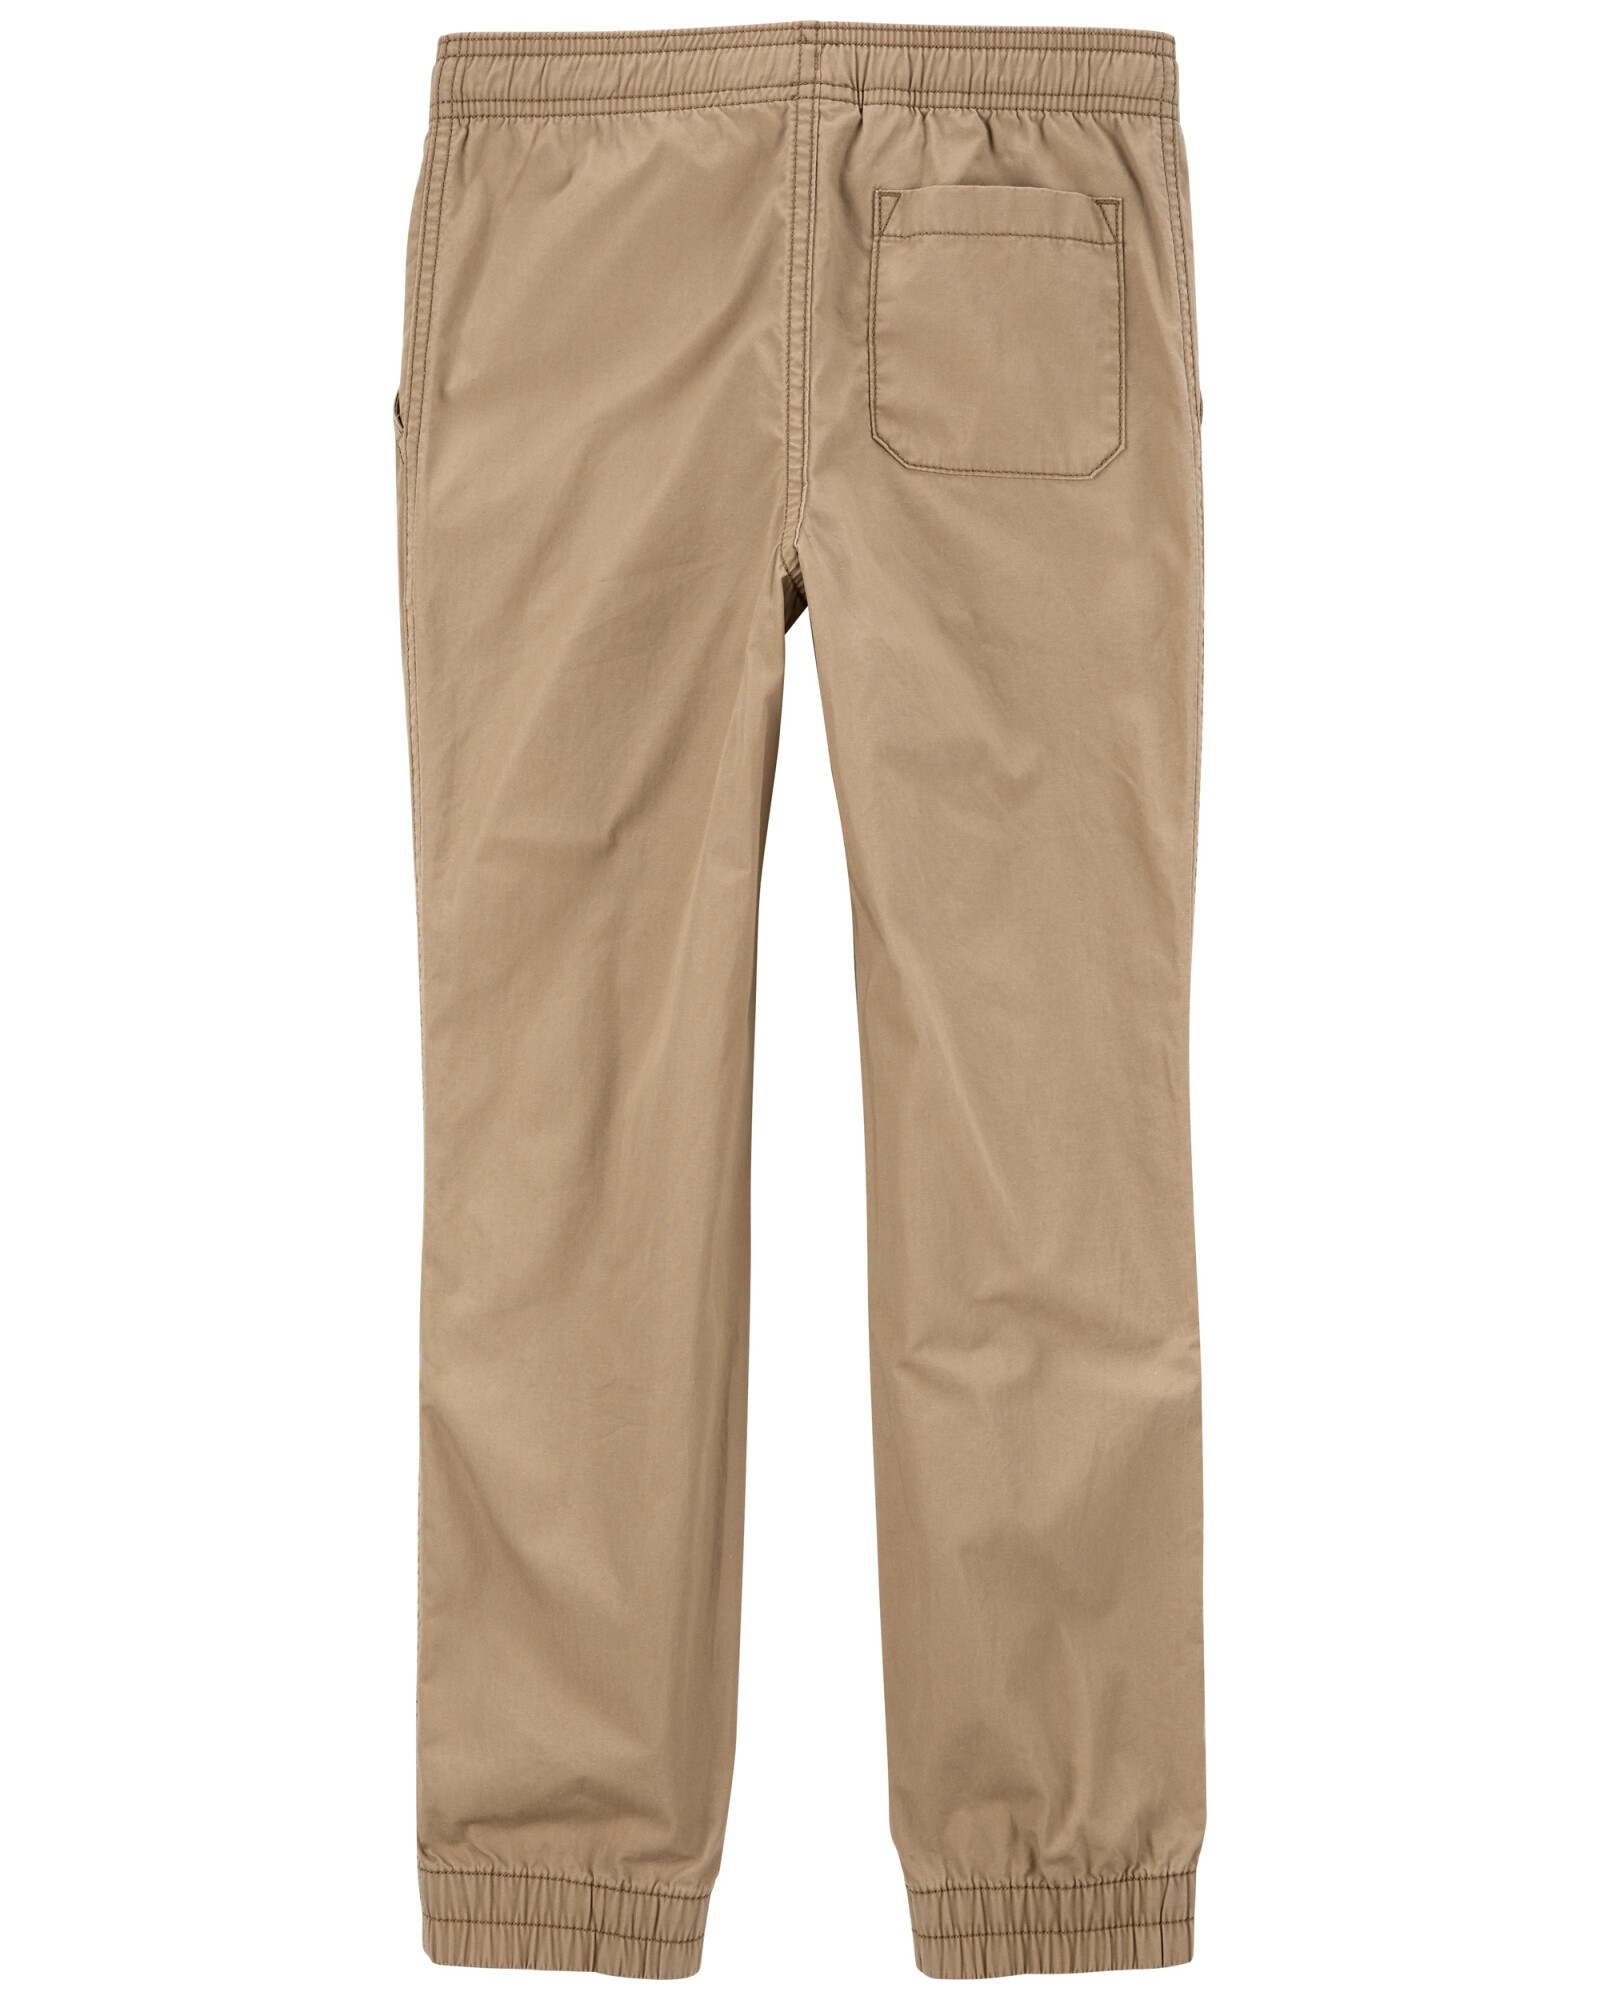 Pantalón de popelina khaki. Talles 6-8 Sin color